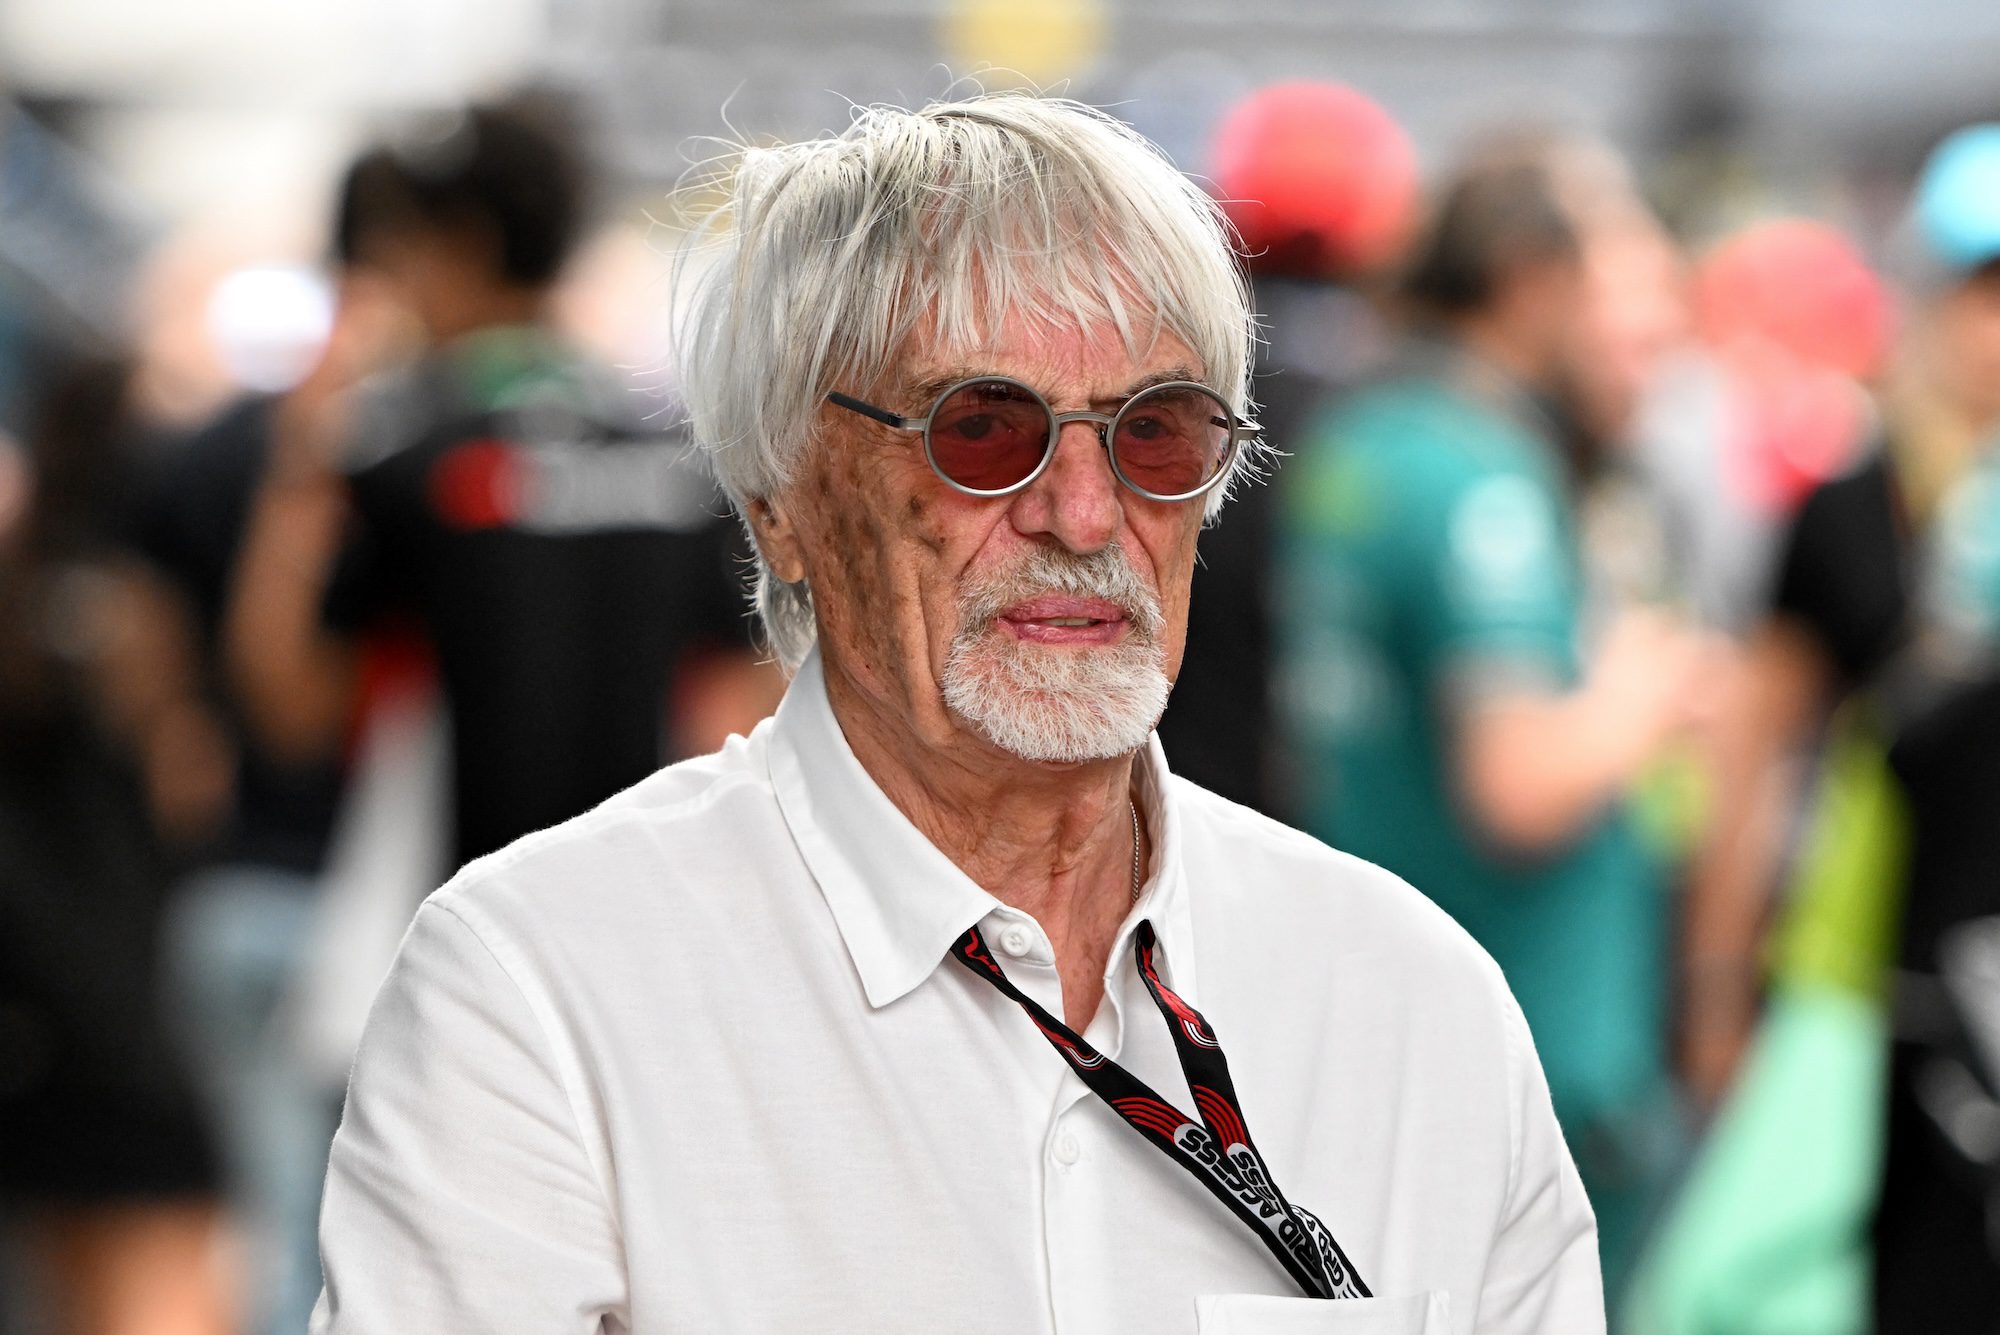 F1: “O sucesso traz inimigos”, disse Ecclestone sobre investigação de Horner